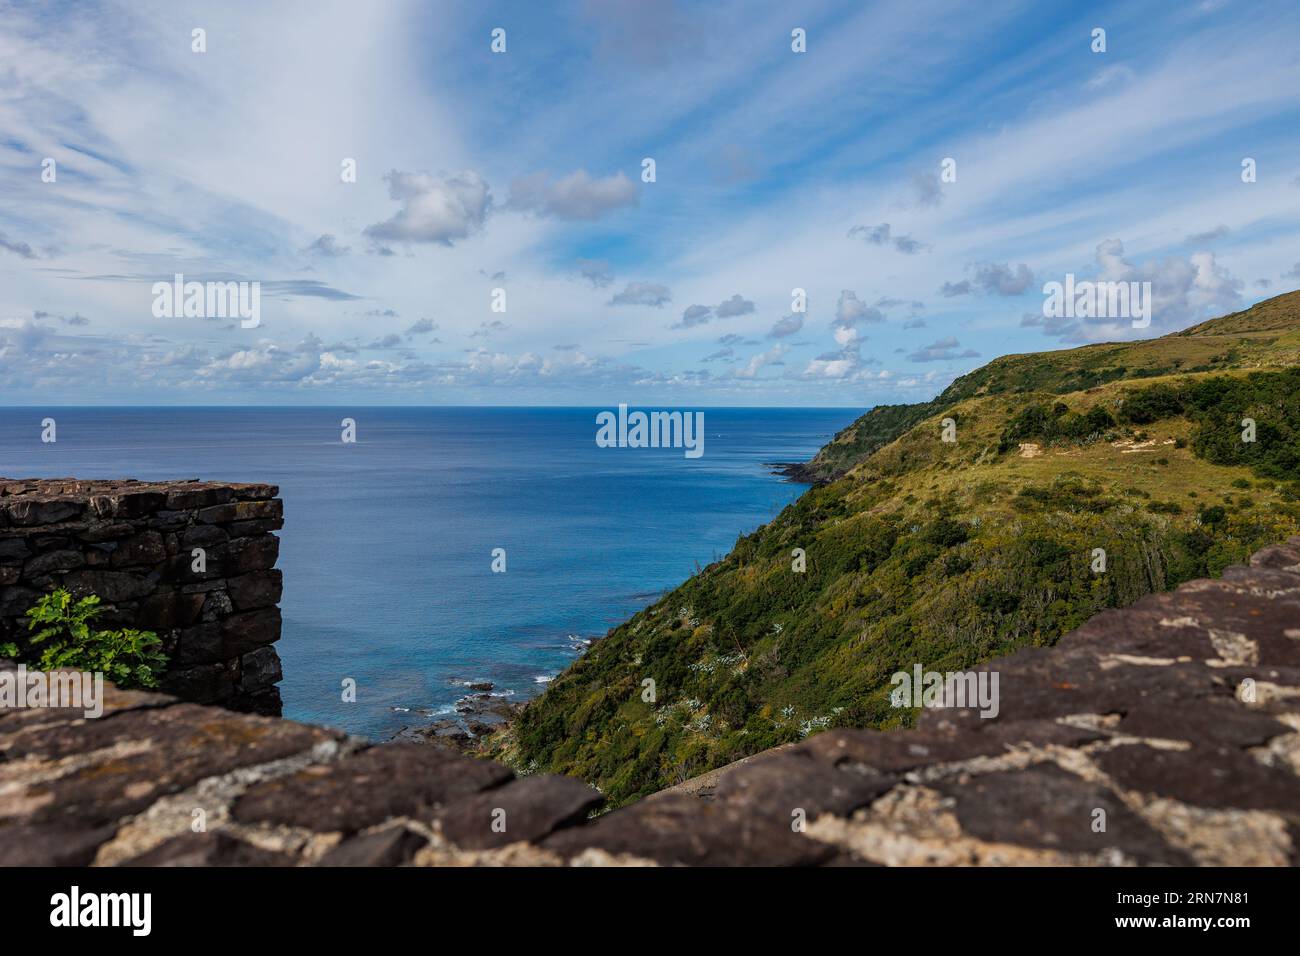 Aussichtspunkt auf Santa Maria Insel, Meer und Berge, Reise Azoren Inseln, Portugal. Stockfoto